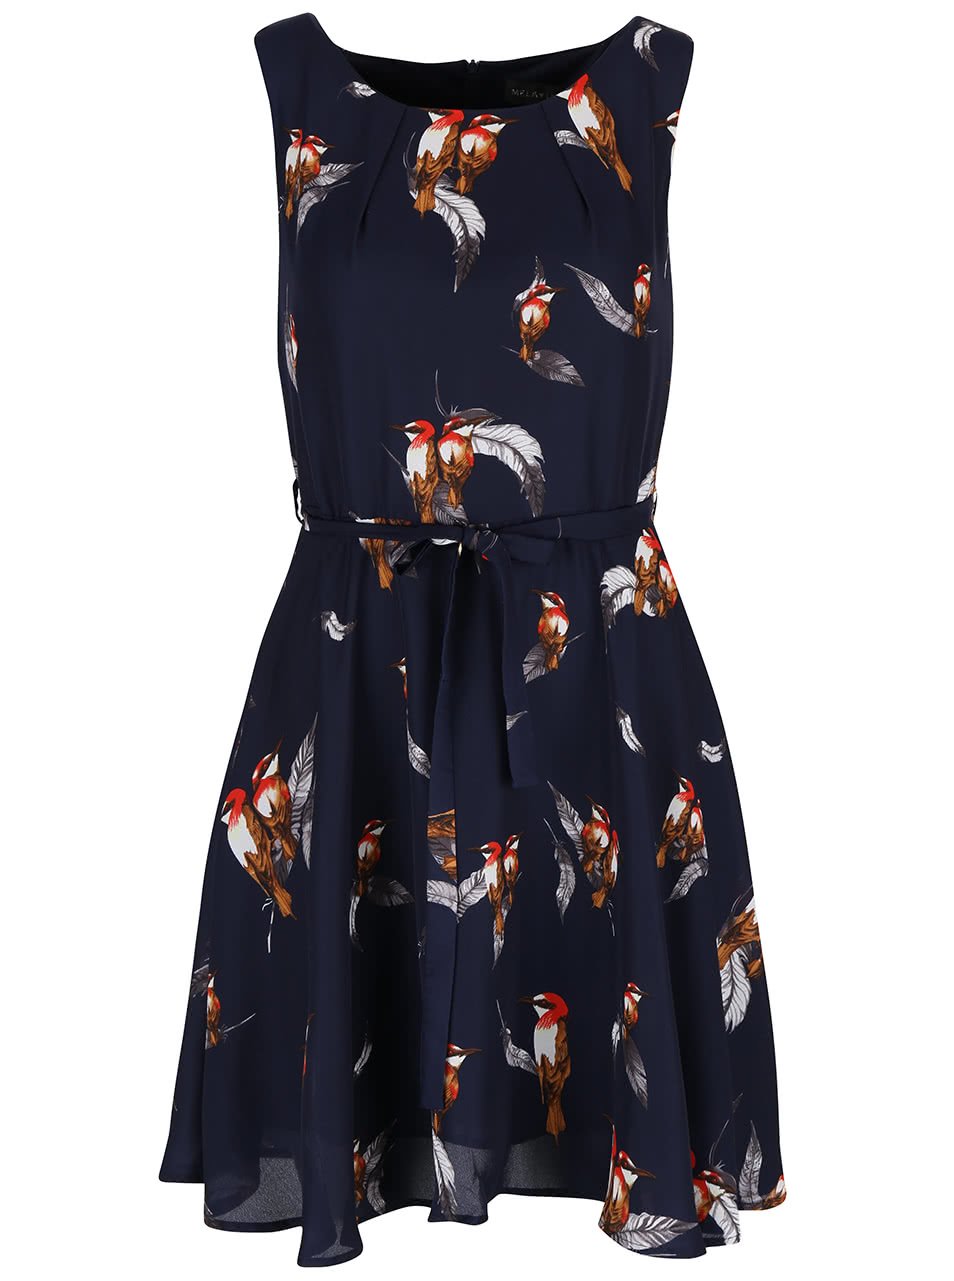 Modré šaty s potiskem ptáčků Mela London